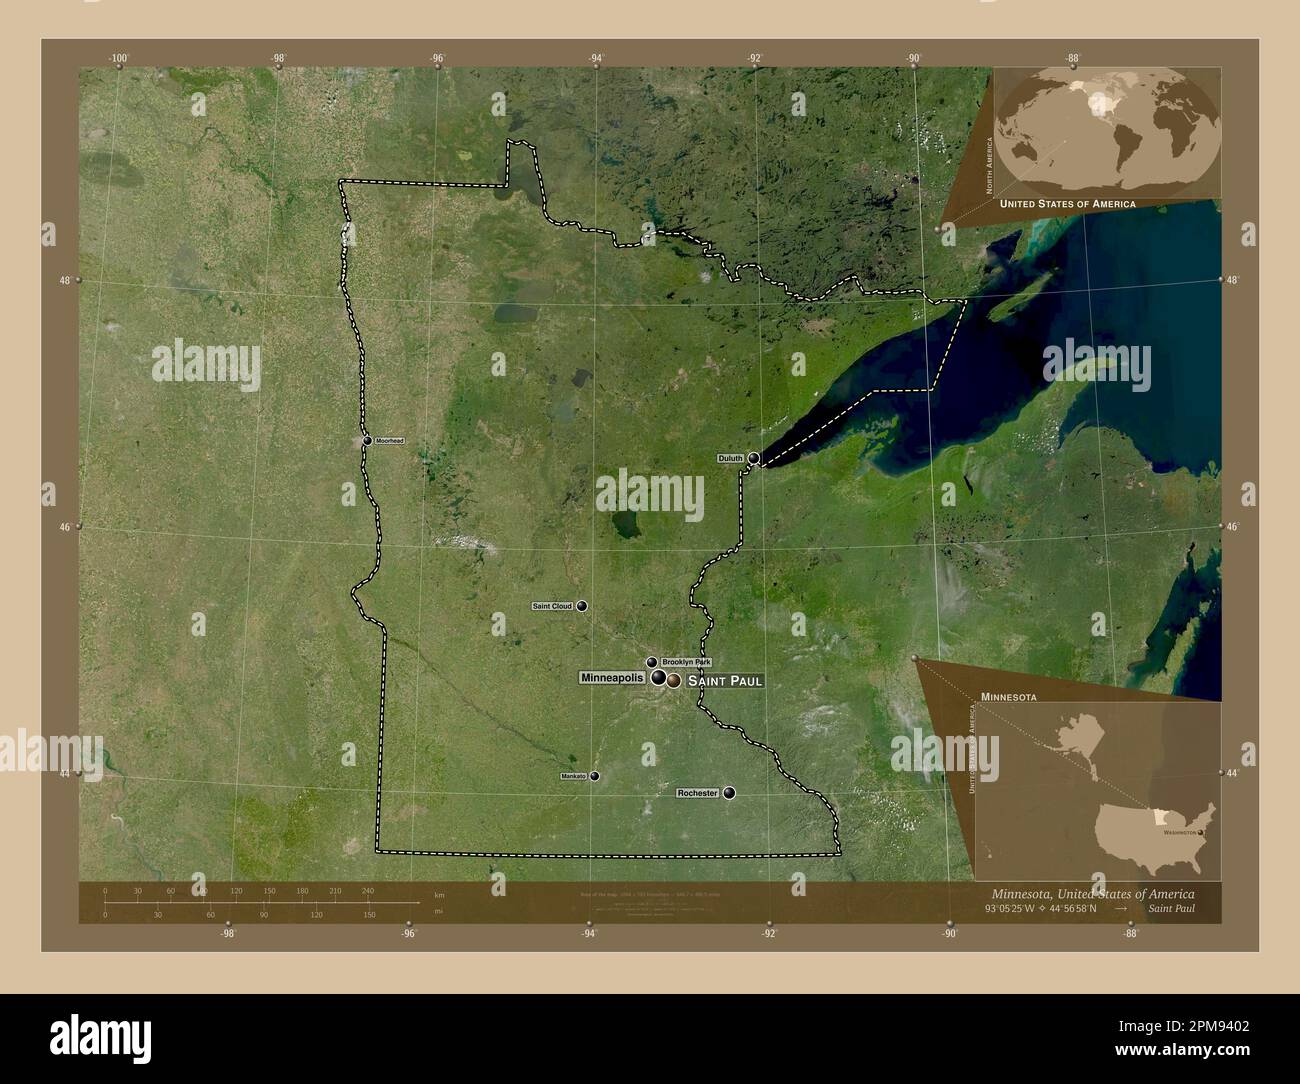 Minnesota, Bundesstaat der Vereinigten Staaten von Amerika. Satellitenkarte mit niedriger Auflösung. Standorte und Namen der wichtigsten Städte der Region. Zusätzliche Eckpunkte Stockfoto